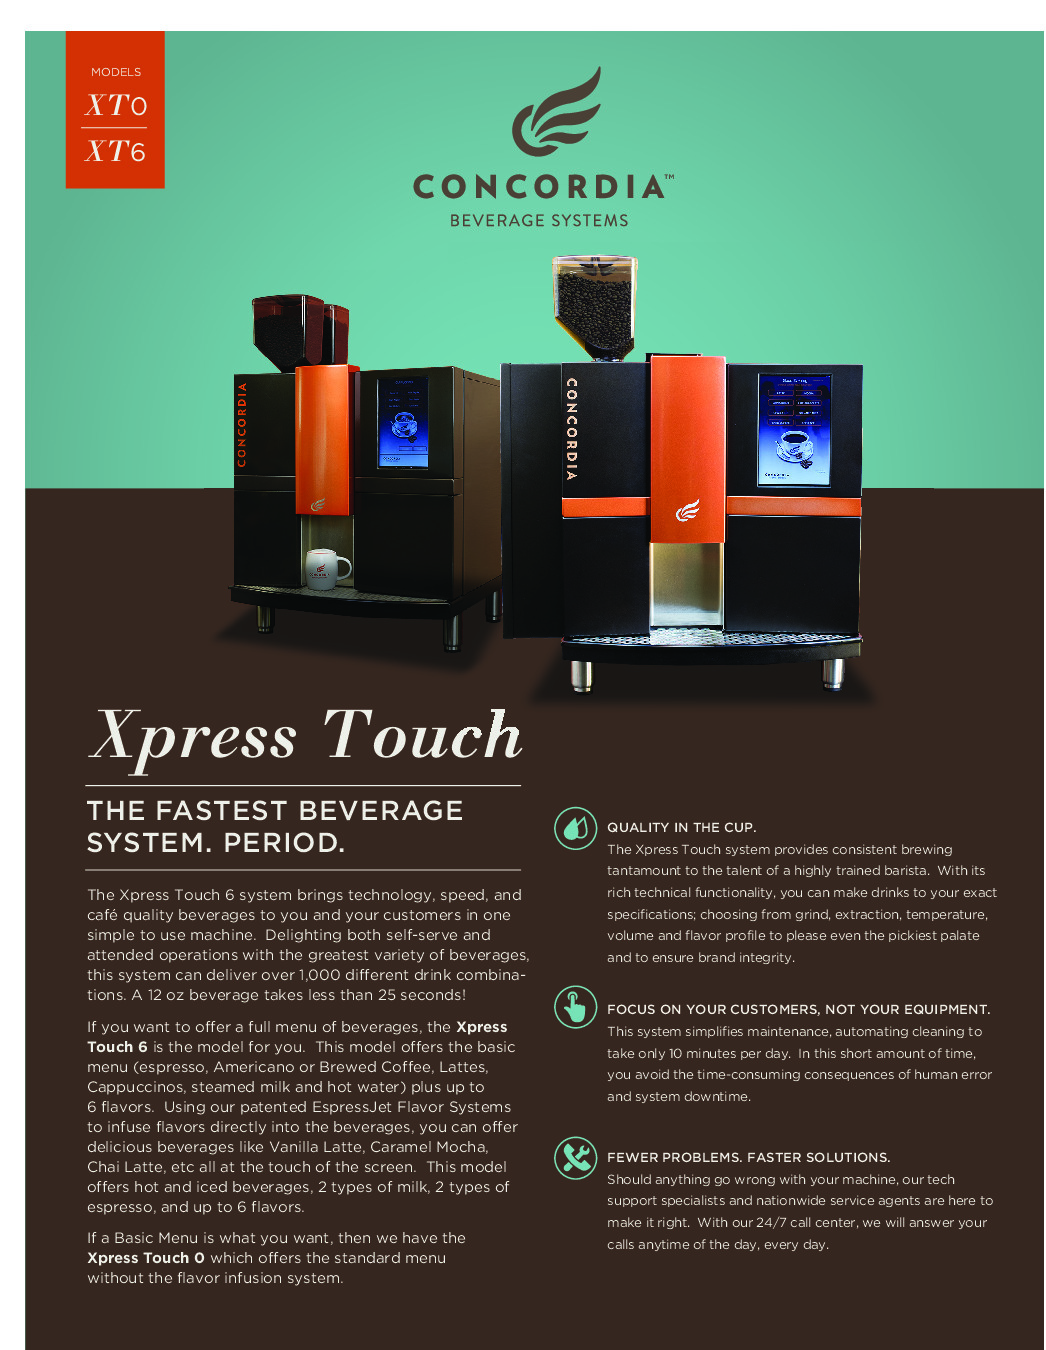 Concordia XPRESSTOUCH 0 Espresso Cappuccino Machine w/ 2 Hoppers, Superautomatic, 150 Cups/Hr.